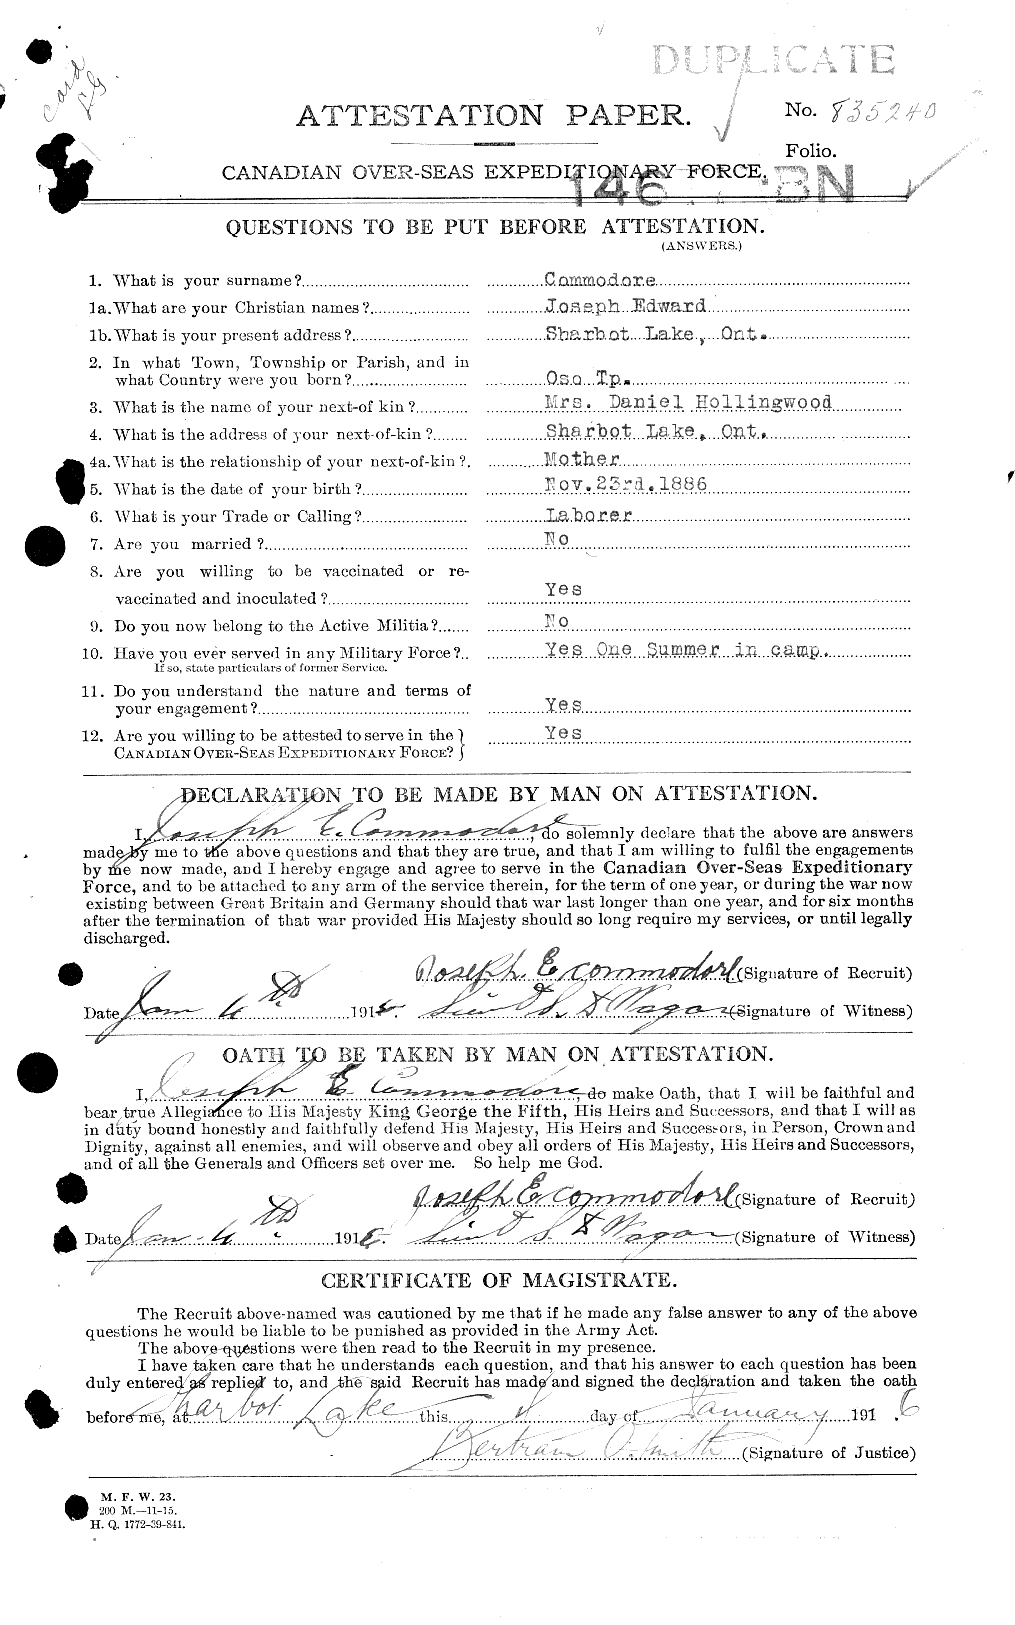 Dossiers du Personnel de la Première Guerre mondiale - CEC 042590a